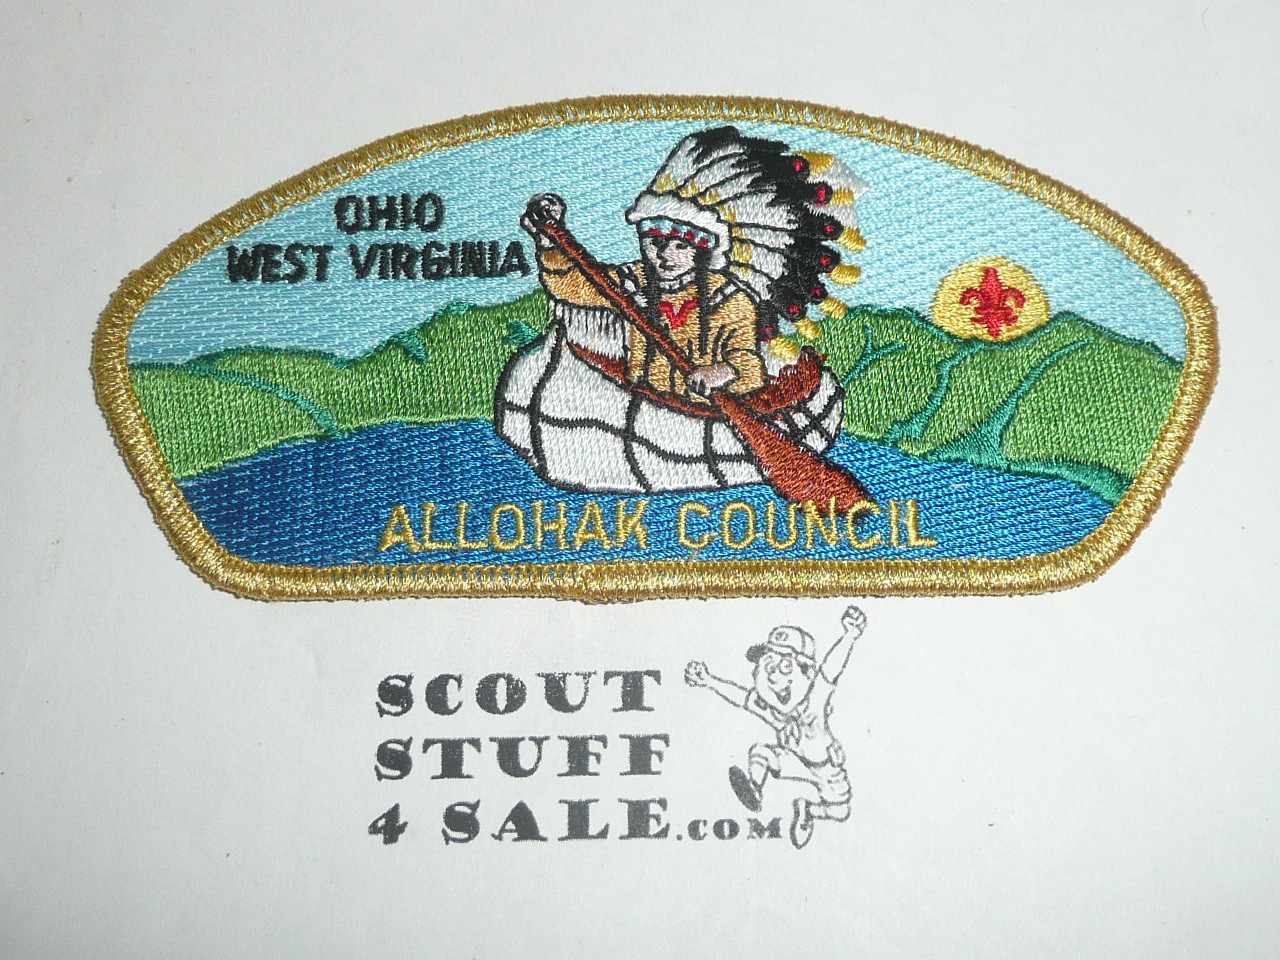 Allohak Council sa18 CSP - Scout